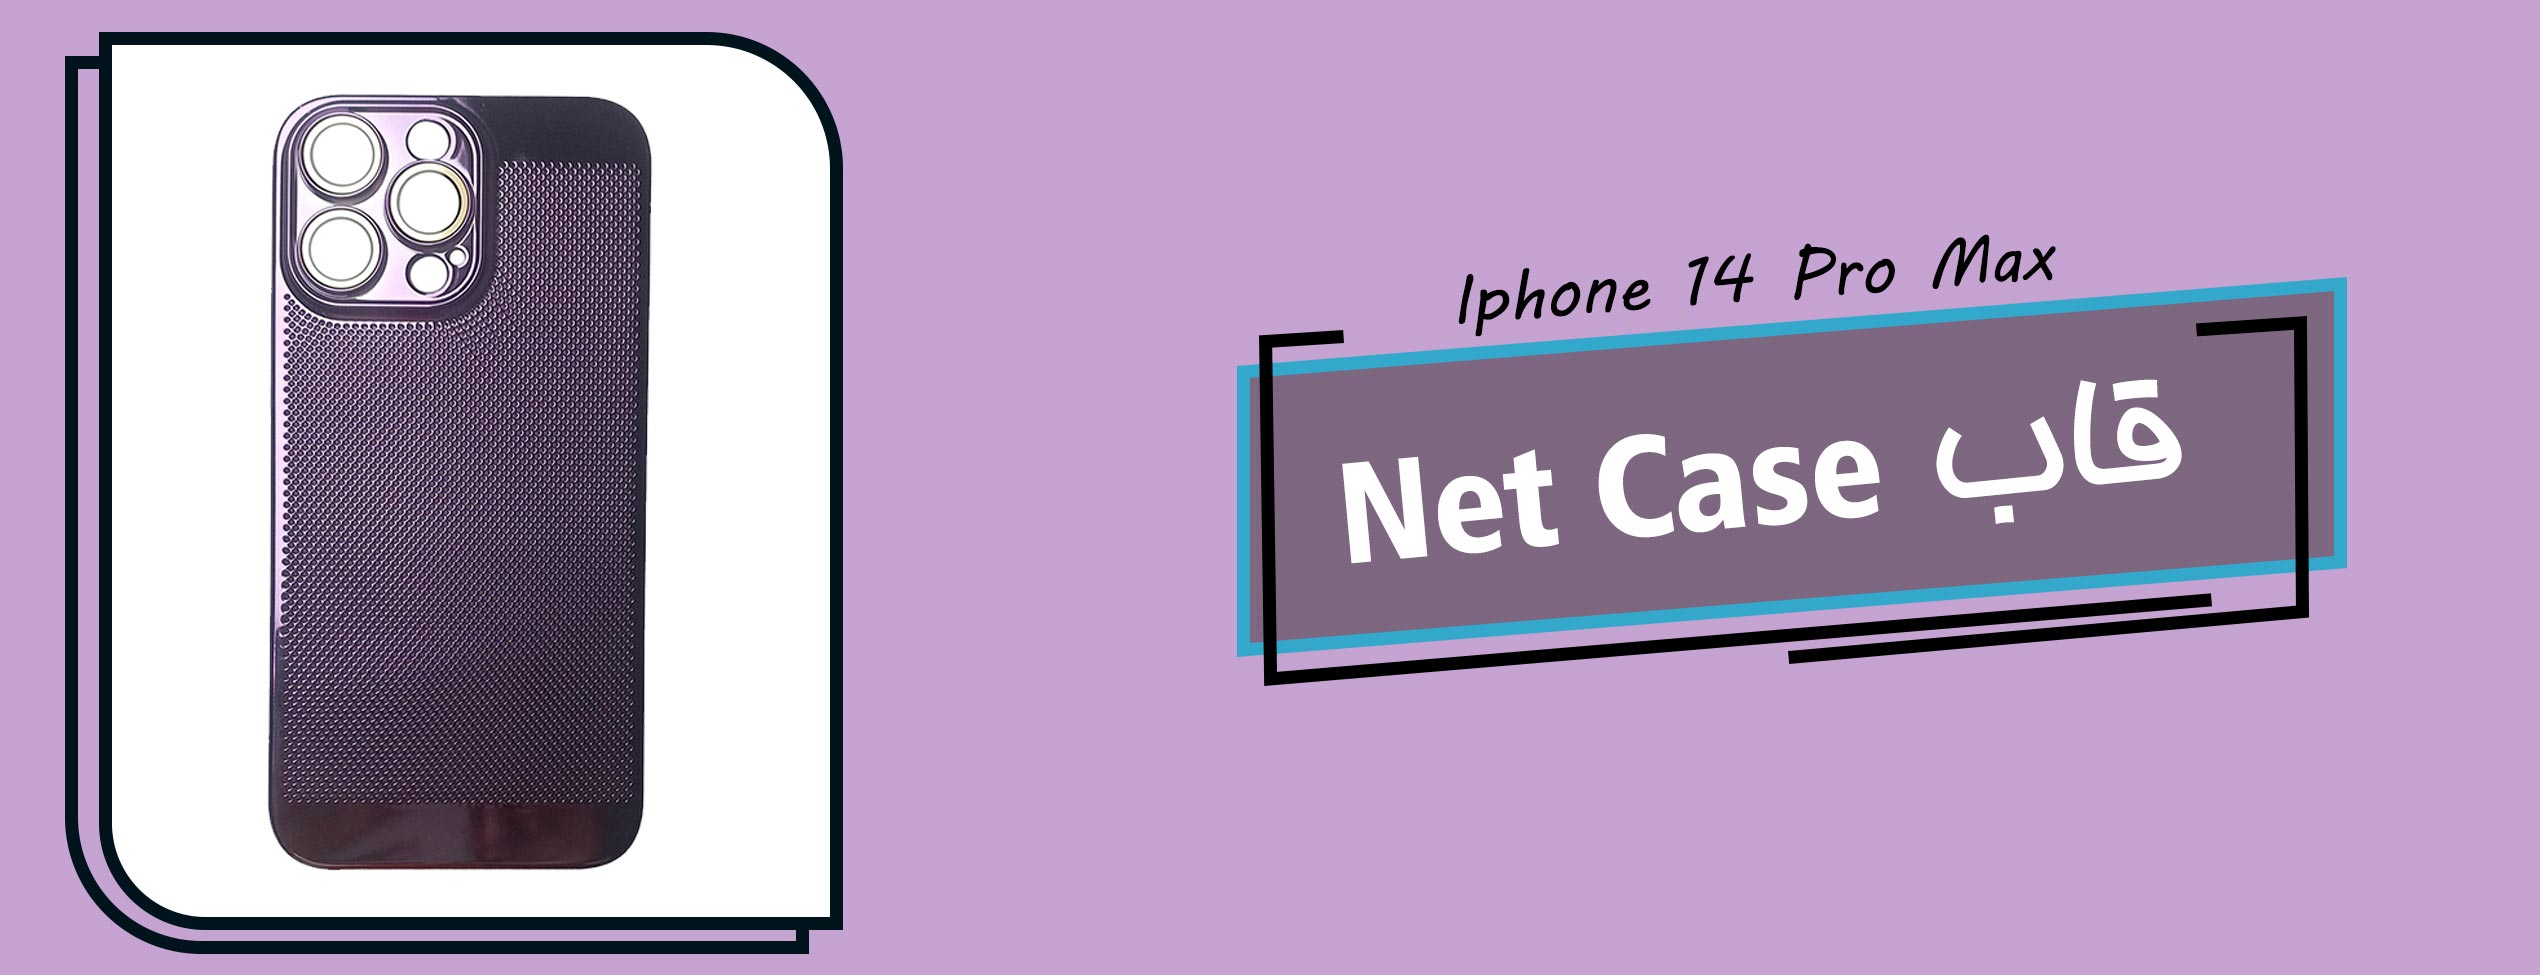 قاب Net Case گوشی موبایل آیفون Iphone 14 Pro Max